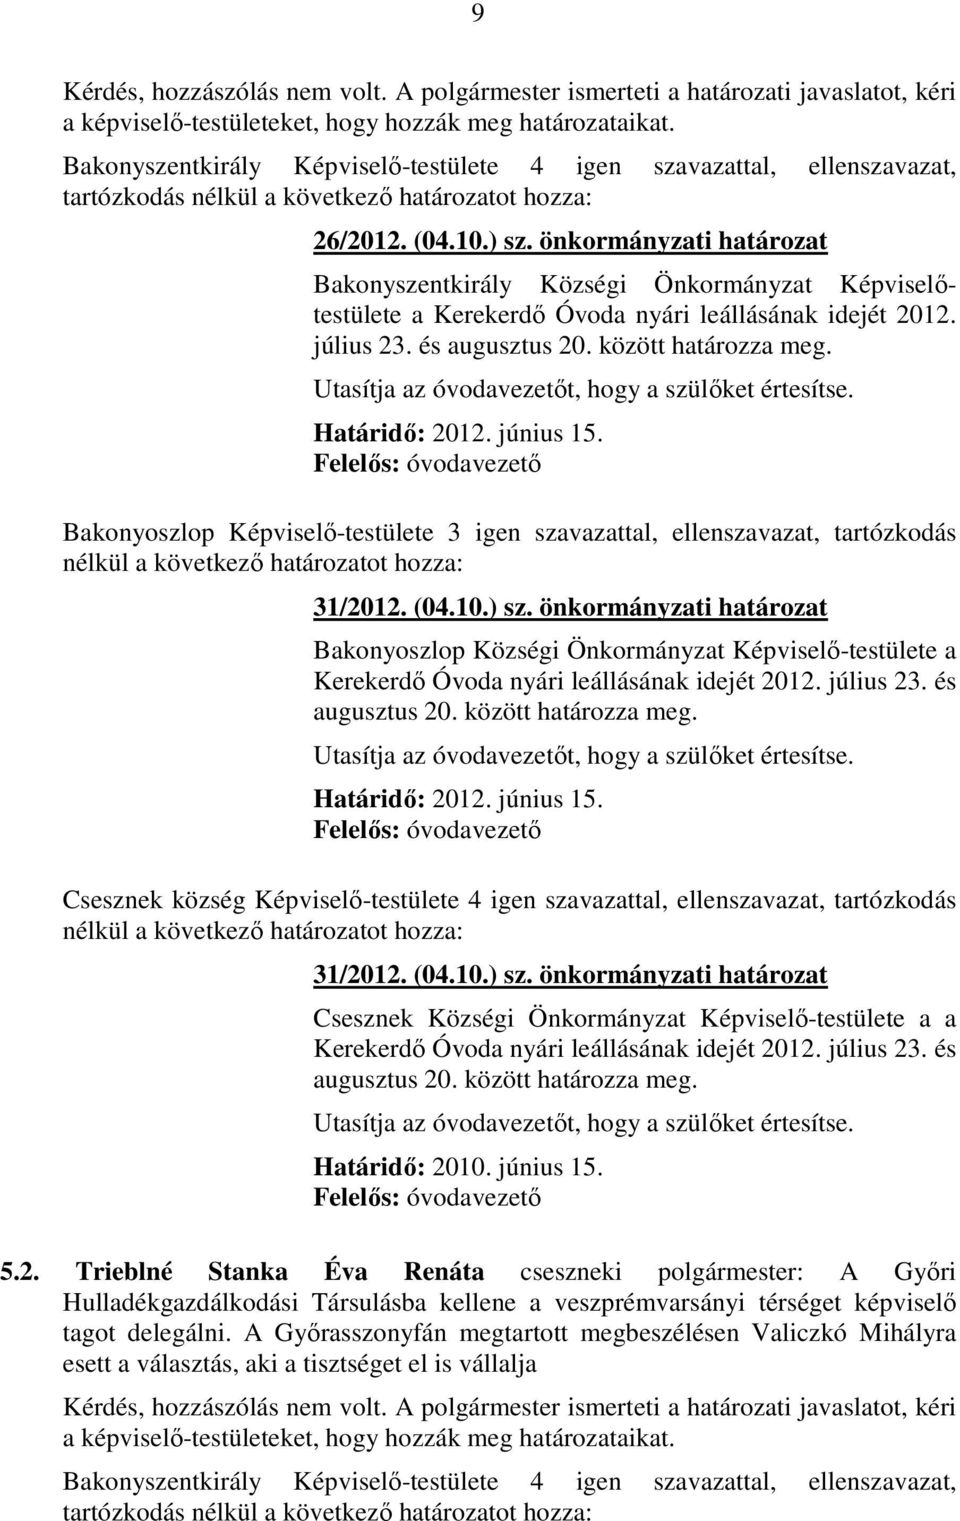 önkormányzati határozat Bakonyszentkirály Községi Önkormányzat Képviselőtestülete a Kerekerdő Óvoda nyári leállásának idejét 2012. július 23. és augusztus 20. között határozza meg.